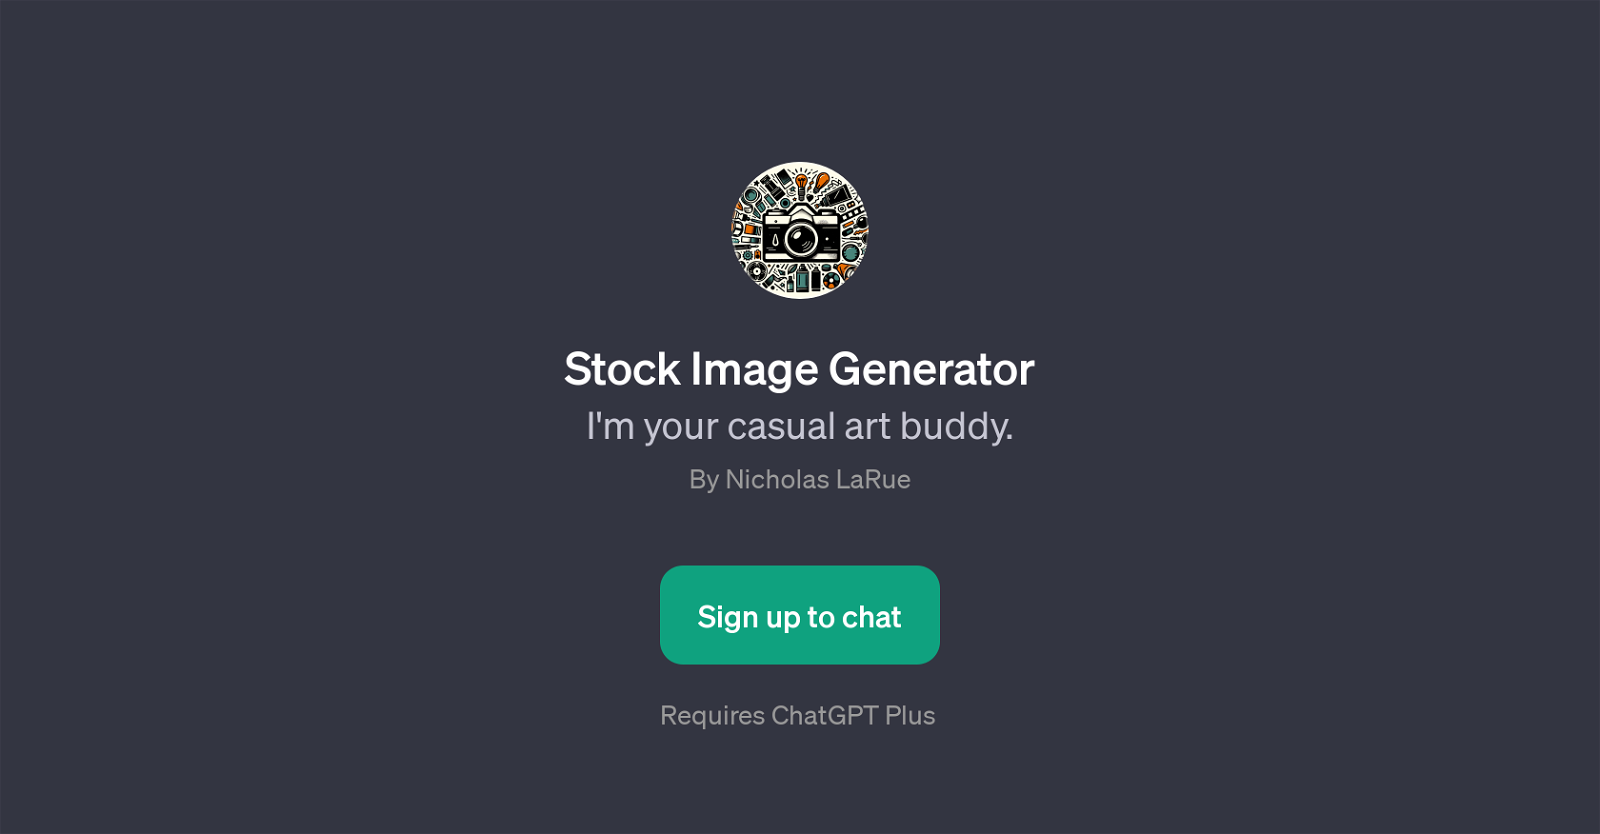 Stock Image Generator website